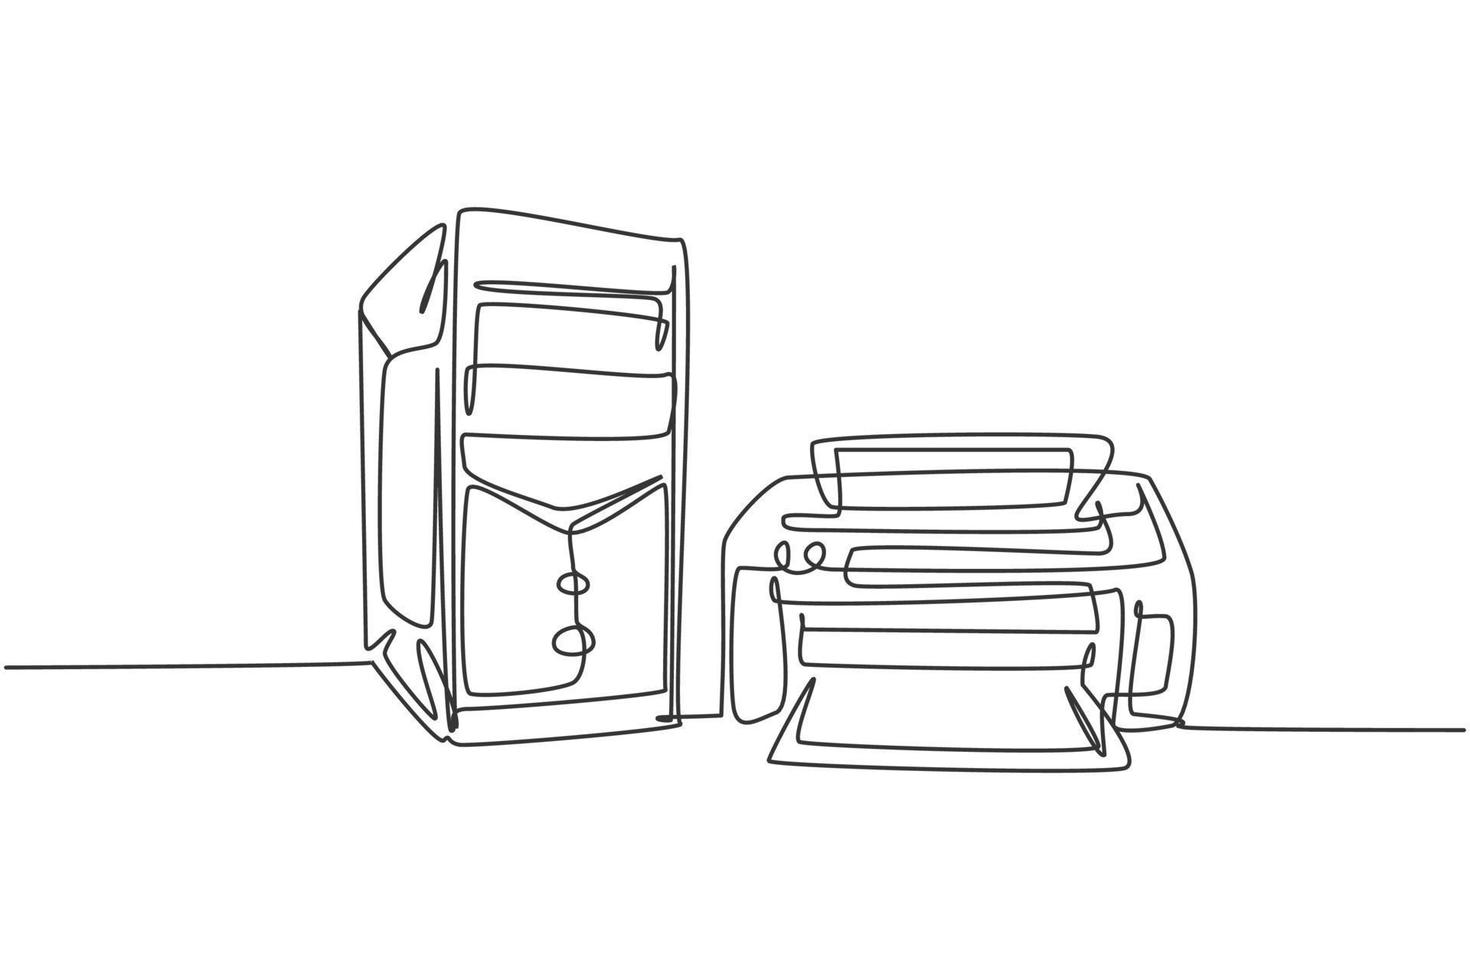 un disegno a linea continua di computer cpu e stampante per piccoli elettrodomestici da ufficio. concetto di modello di attrezzatura domestica di elettricità. illustrazione grafica vettoriale di design a linea singola alla moda